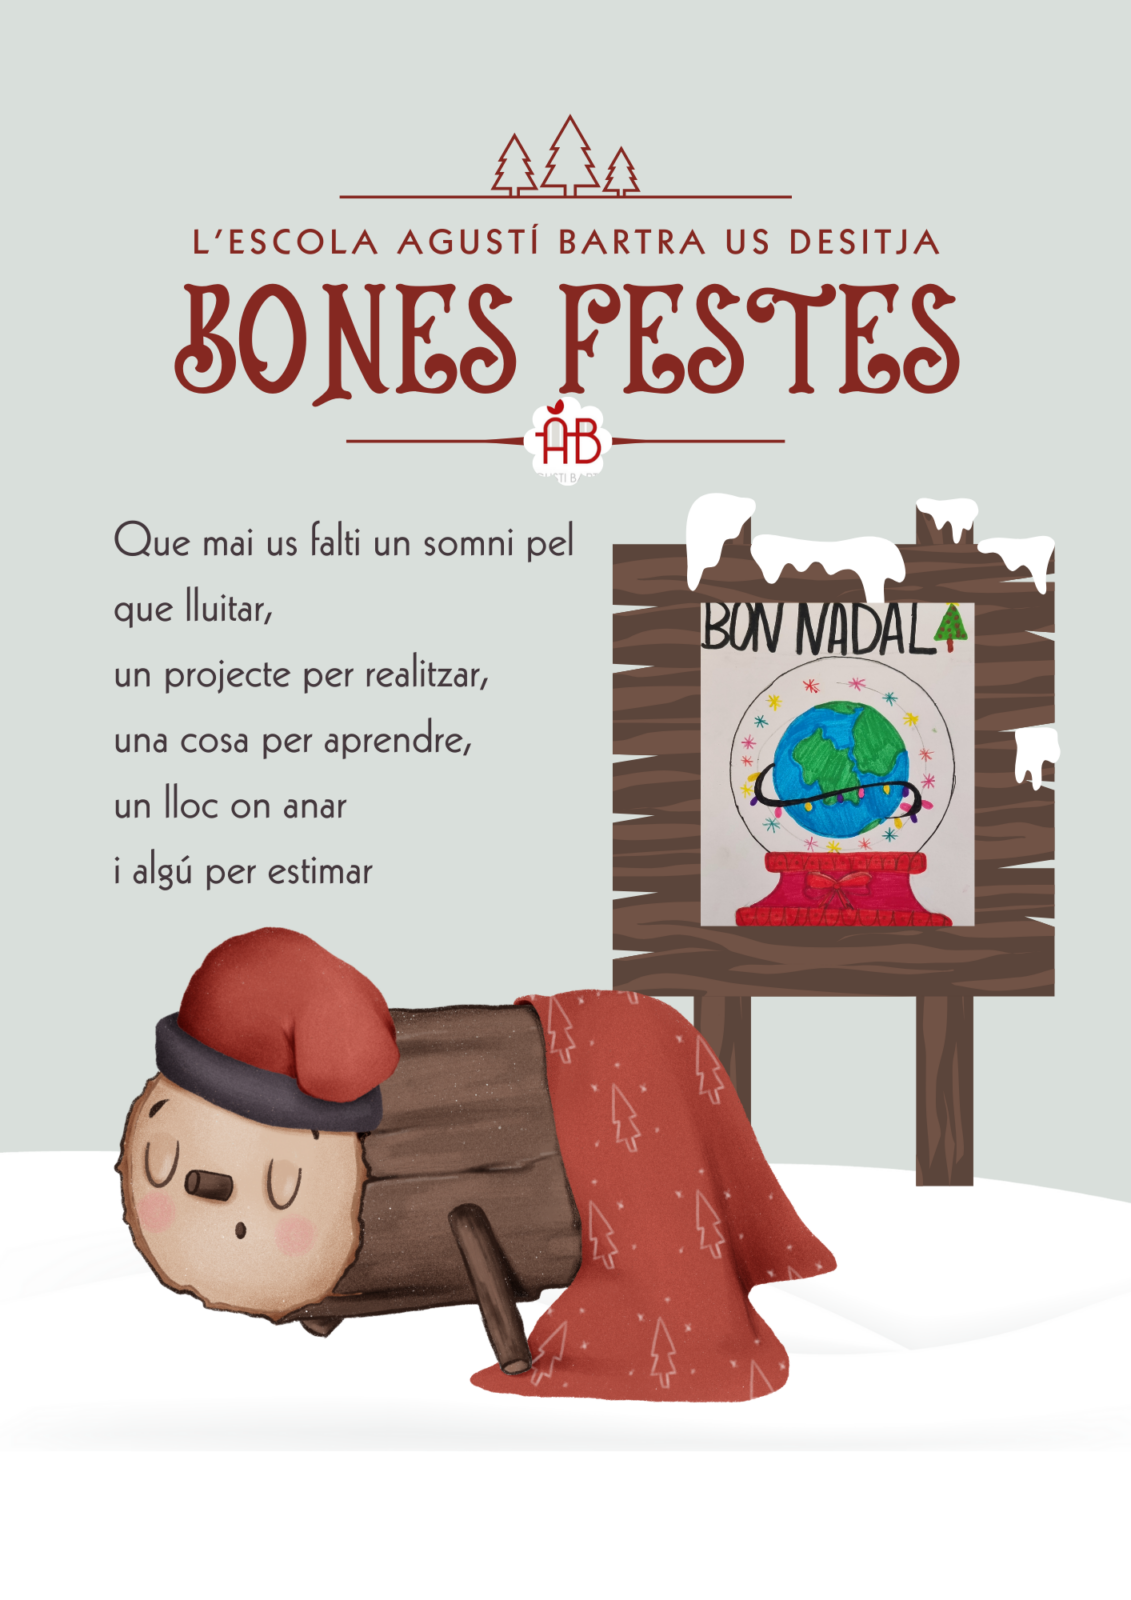 Bones Festes!!!